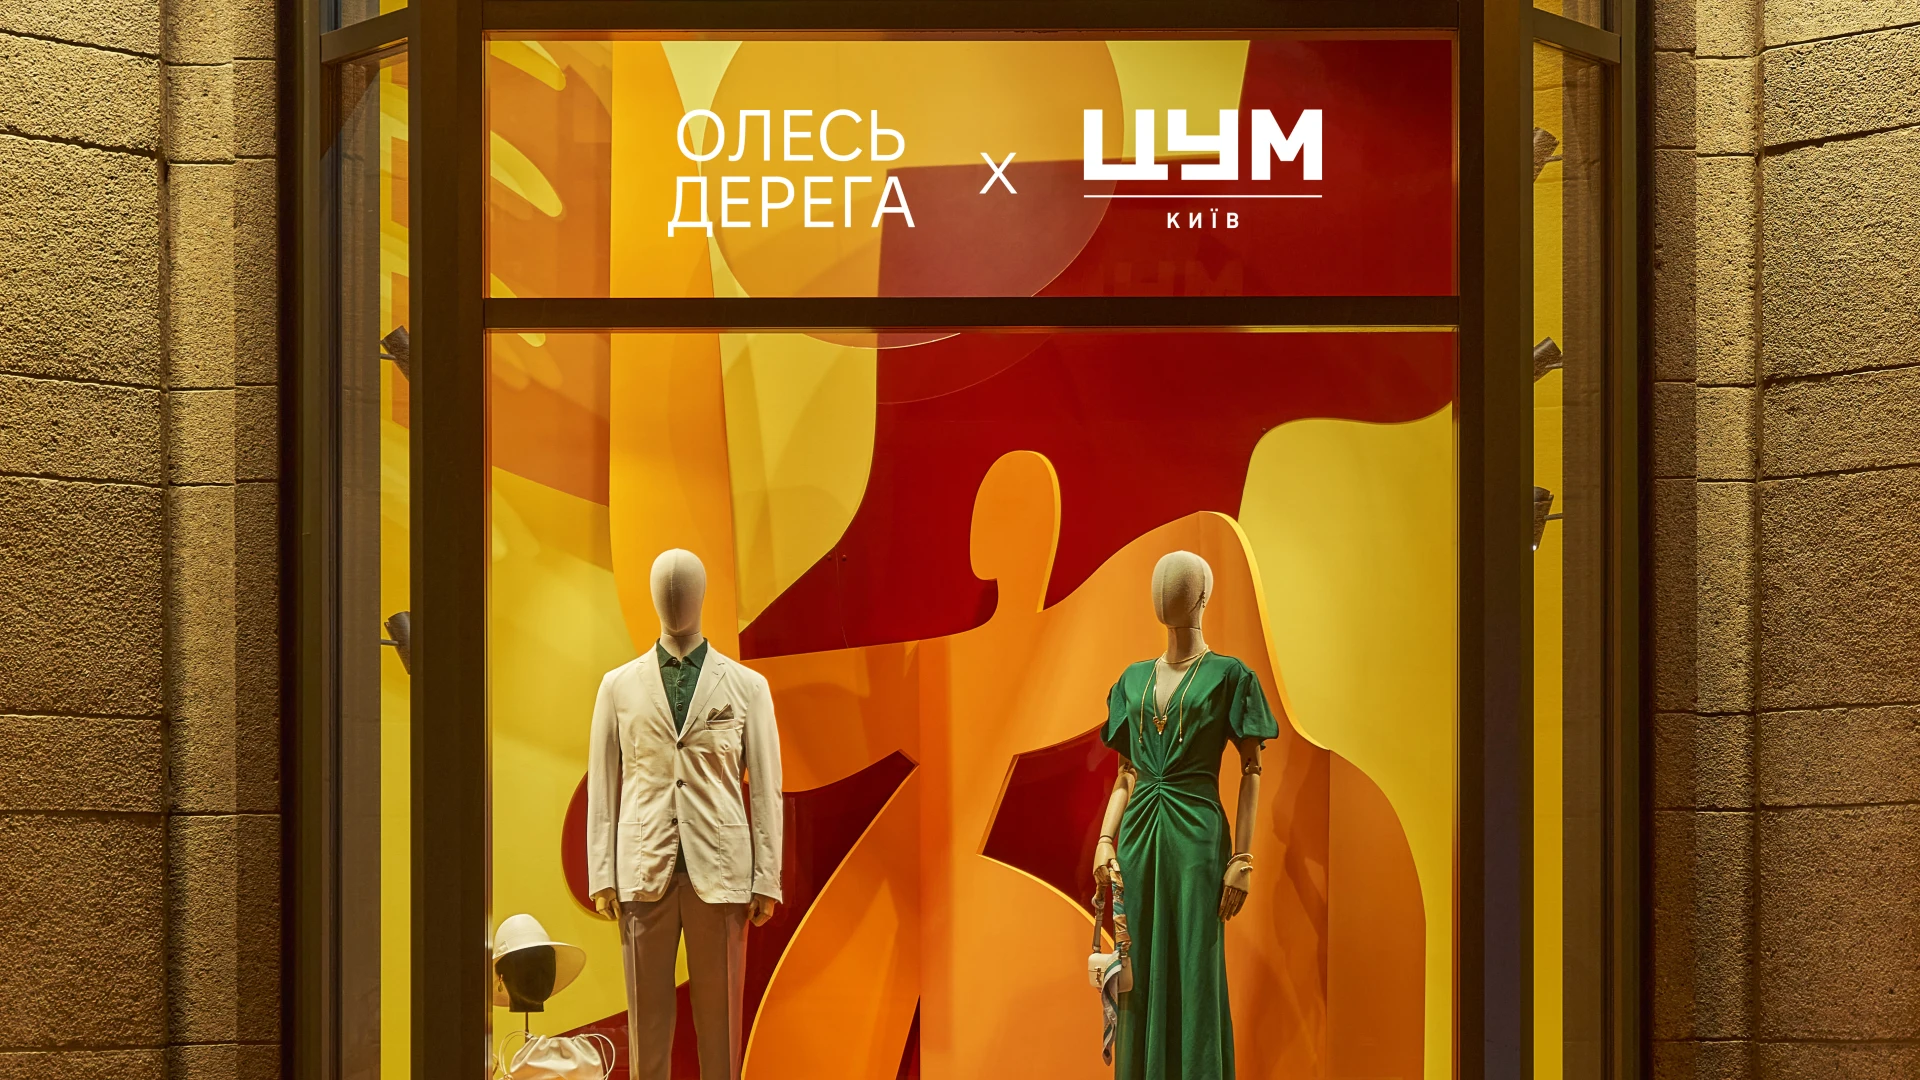 ЦУМ Київ презентував нові весняні вітрини разом із львівським художником Олесем Дерегою